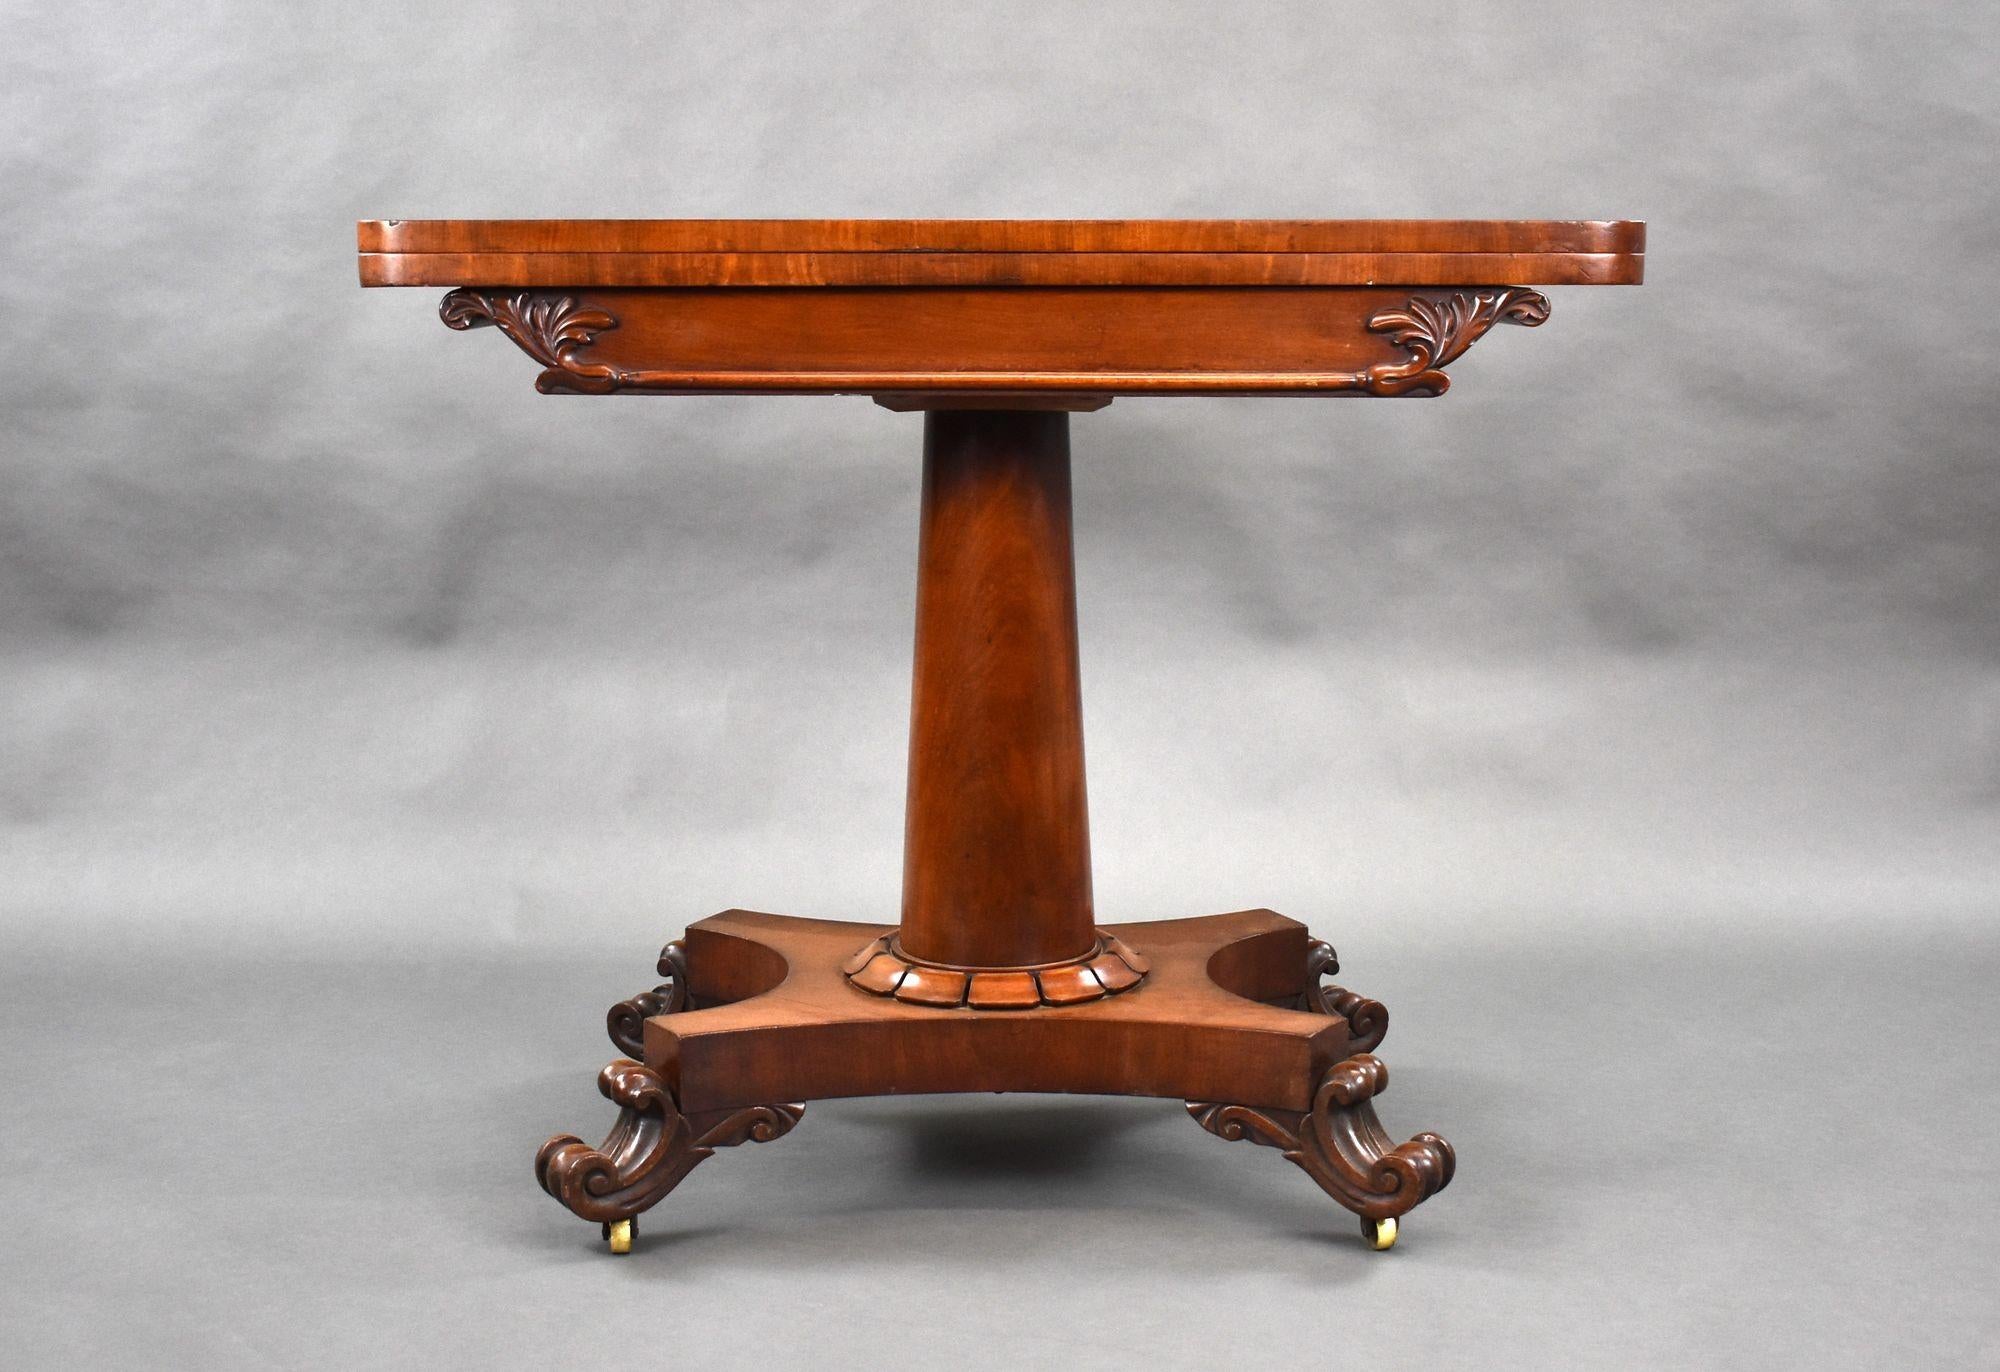 Zu verkaufen ist eine gute Qualität William IV Mahagoni Kartentisch, mit einem Ordner über Top über einem zylindrischen Stamm, der Tisch hat eine Plattform Basis auf vier eleganten Schnecke Füße erhöht. Dieses Stück bleibt in sehr gutem Zustand für